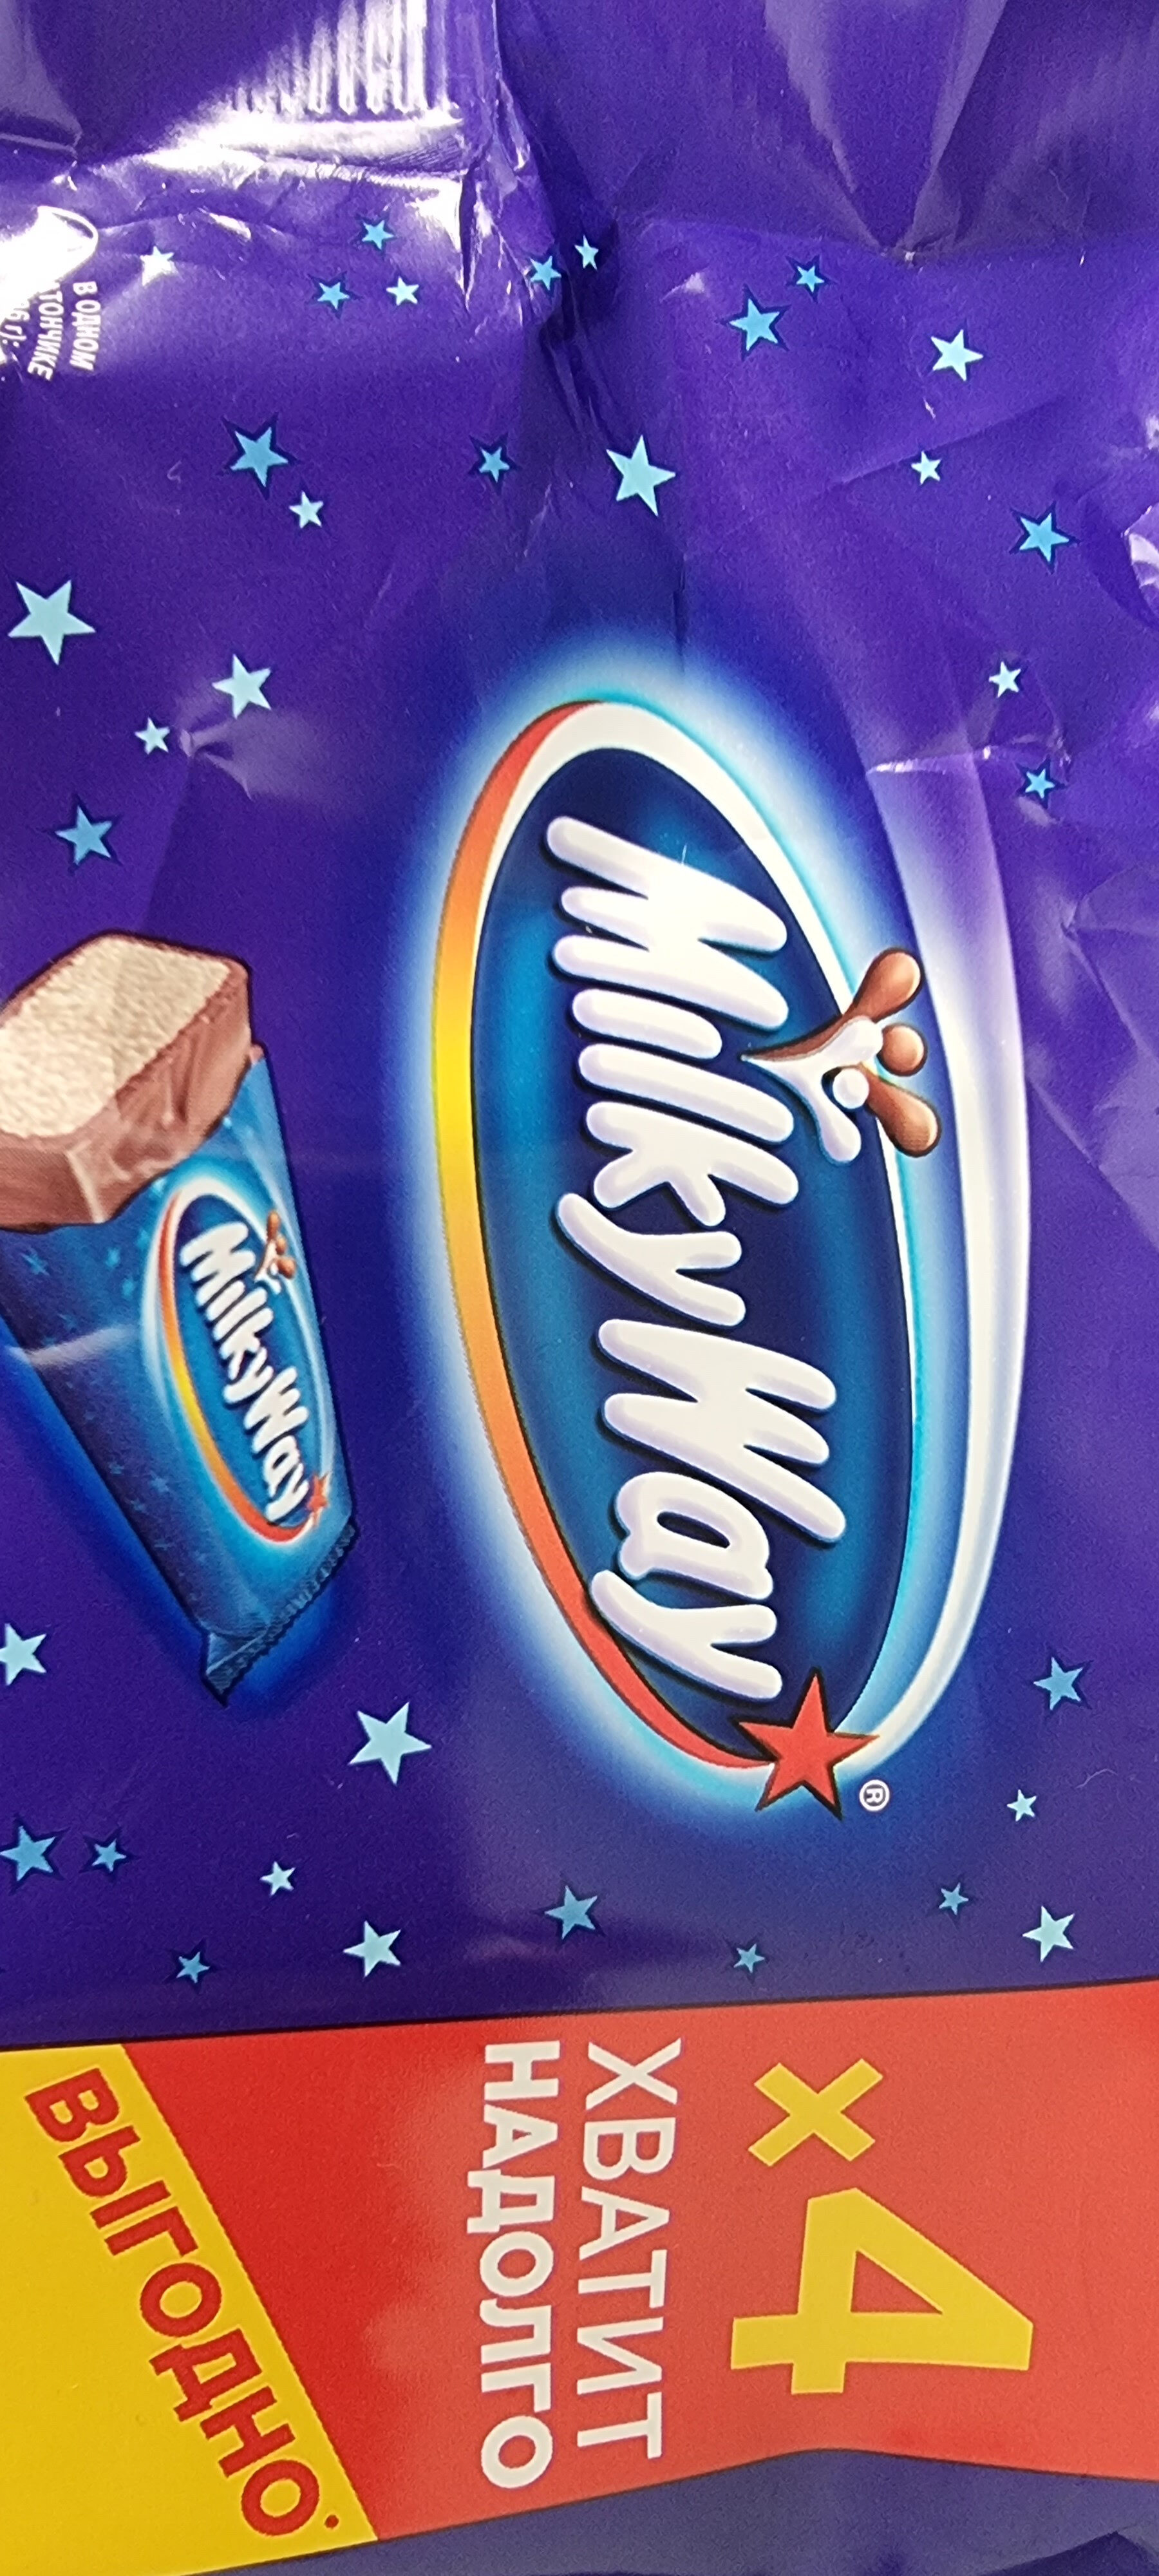 Milky Way - Produkt - en